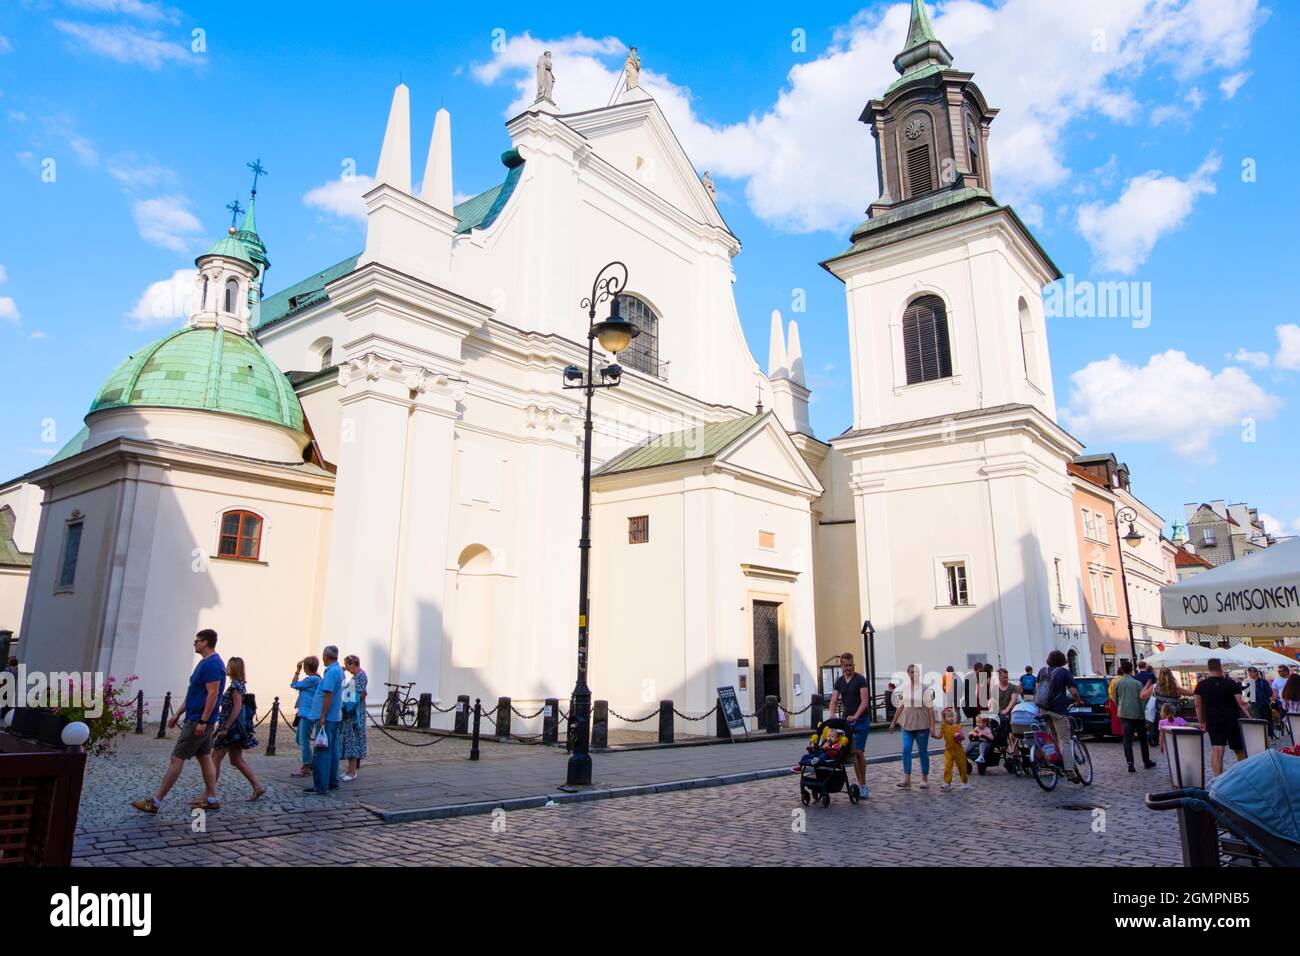 St Hyacinth's Church, Nowe Miasto, new town, Warsaw, Poland Stock Photo